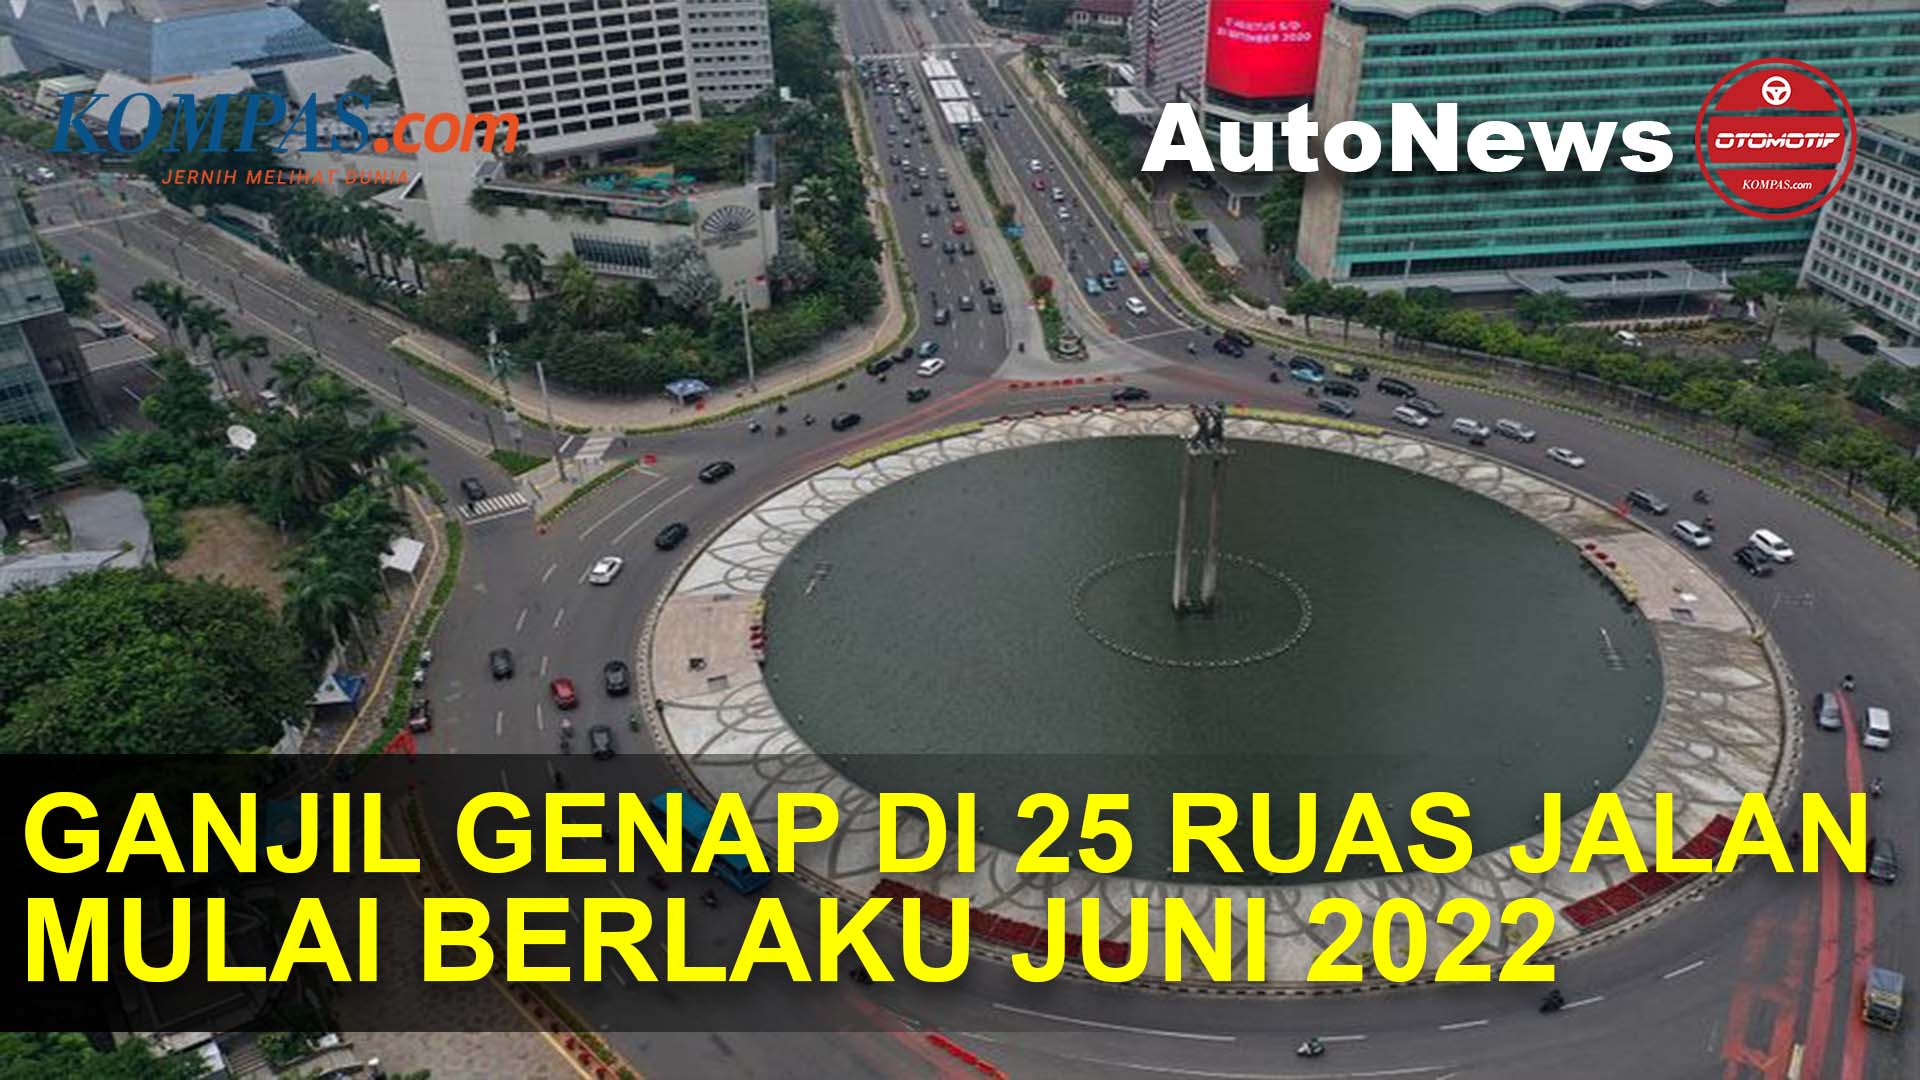 SAH! Perluasan Ganjil Genap di Jakarta Mulai Berlaku 6 Juni 2022. Ini Daftar Ruas Jalannya!